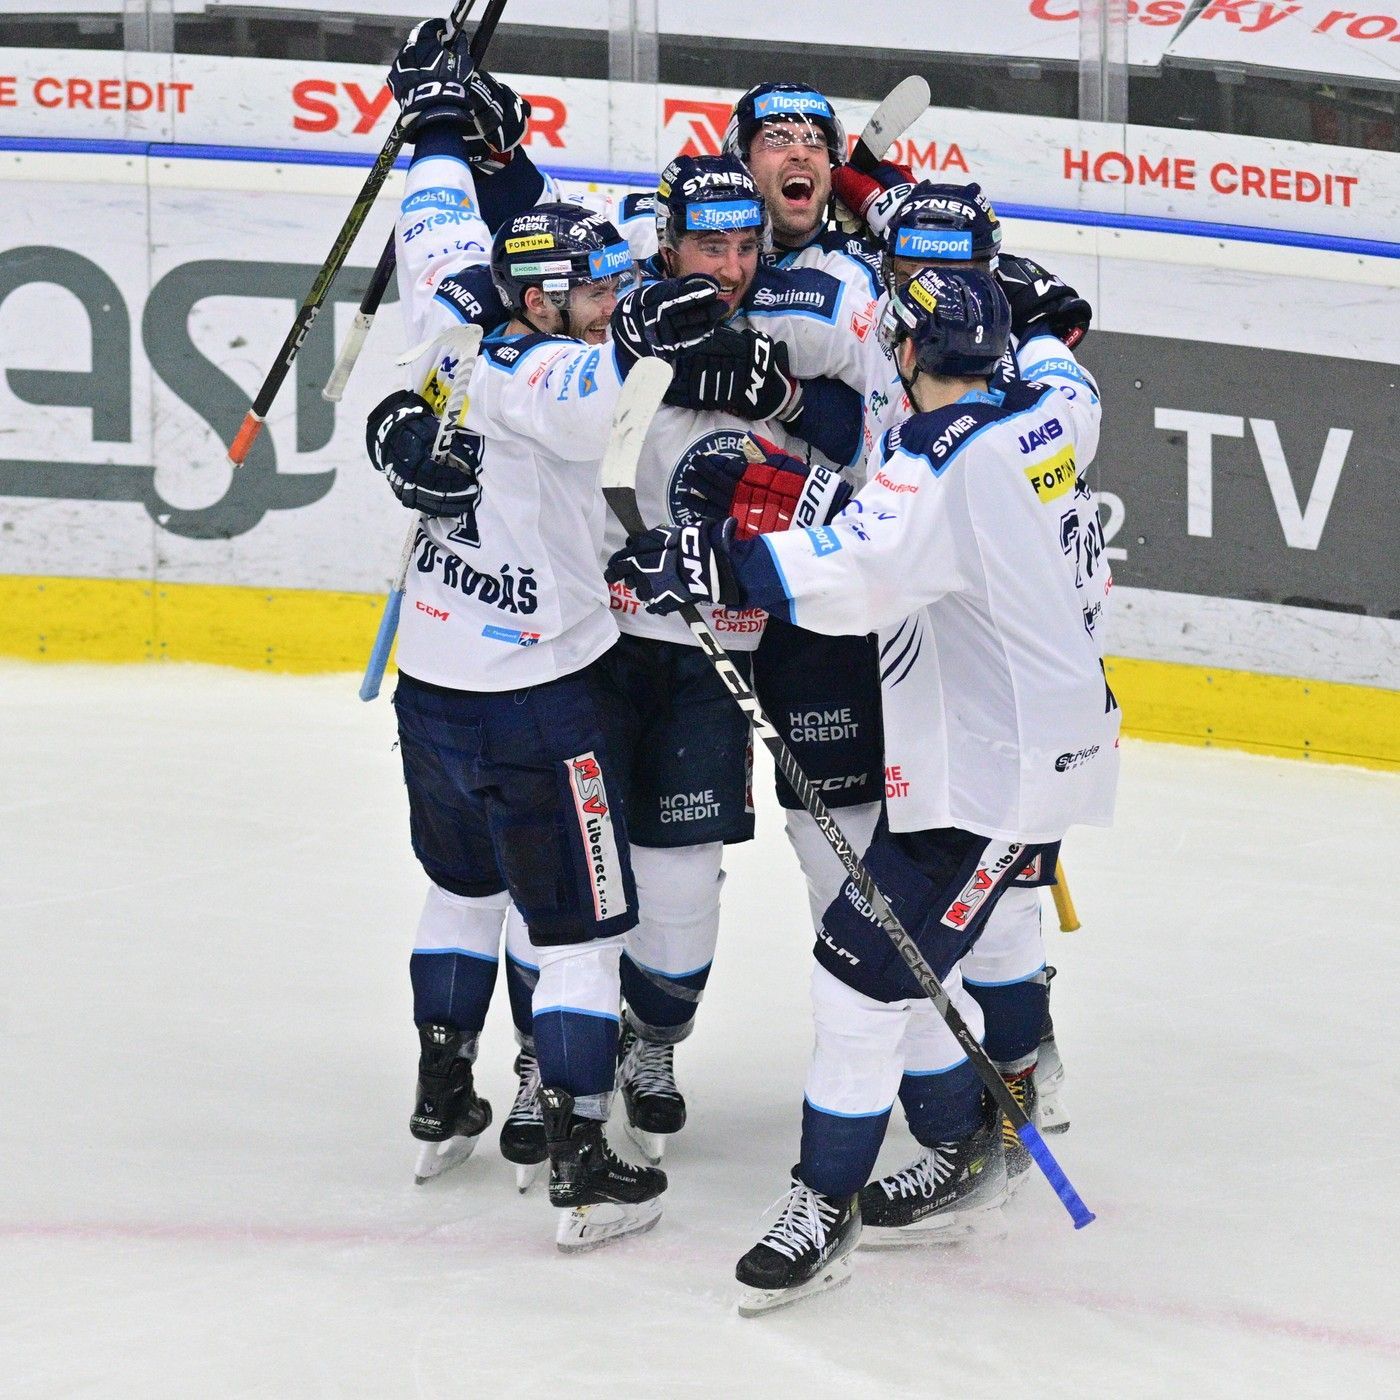 Liberecký hokejista Jaroslav Vlach (druhý zleva) se se spoluhráči raduje ze čtvrtého gólu.